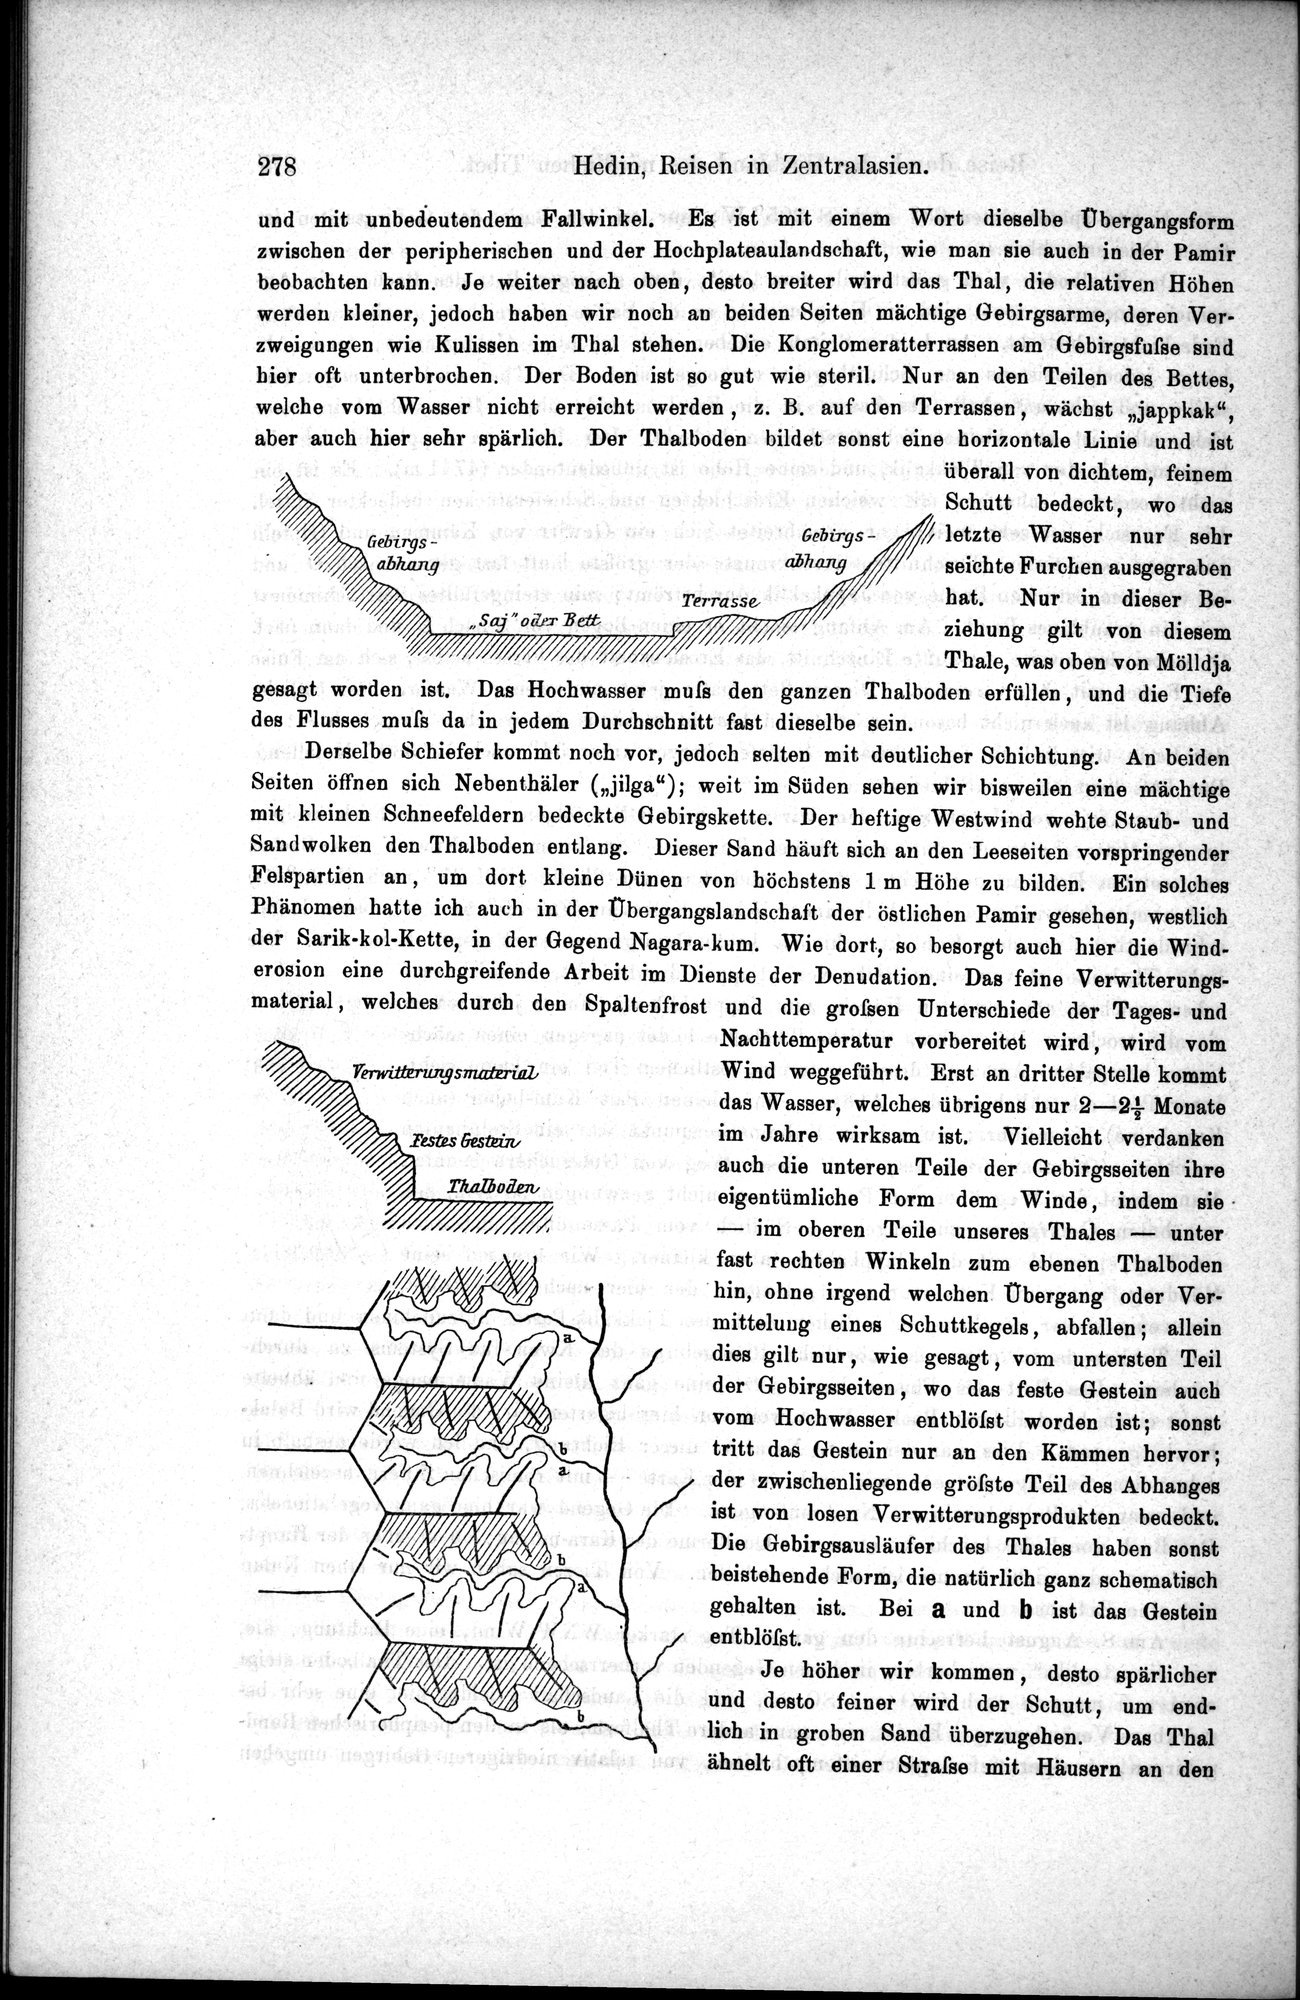 Die Geographische-Wissenschaftlichen Ergebnisse meiner Reisen in Zentralasien, 1894-1897 : vol.1 / Page 290 (Grayscale High Resolution Image)